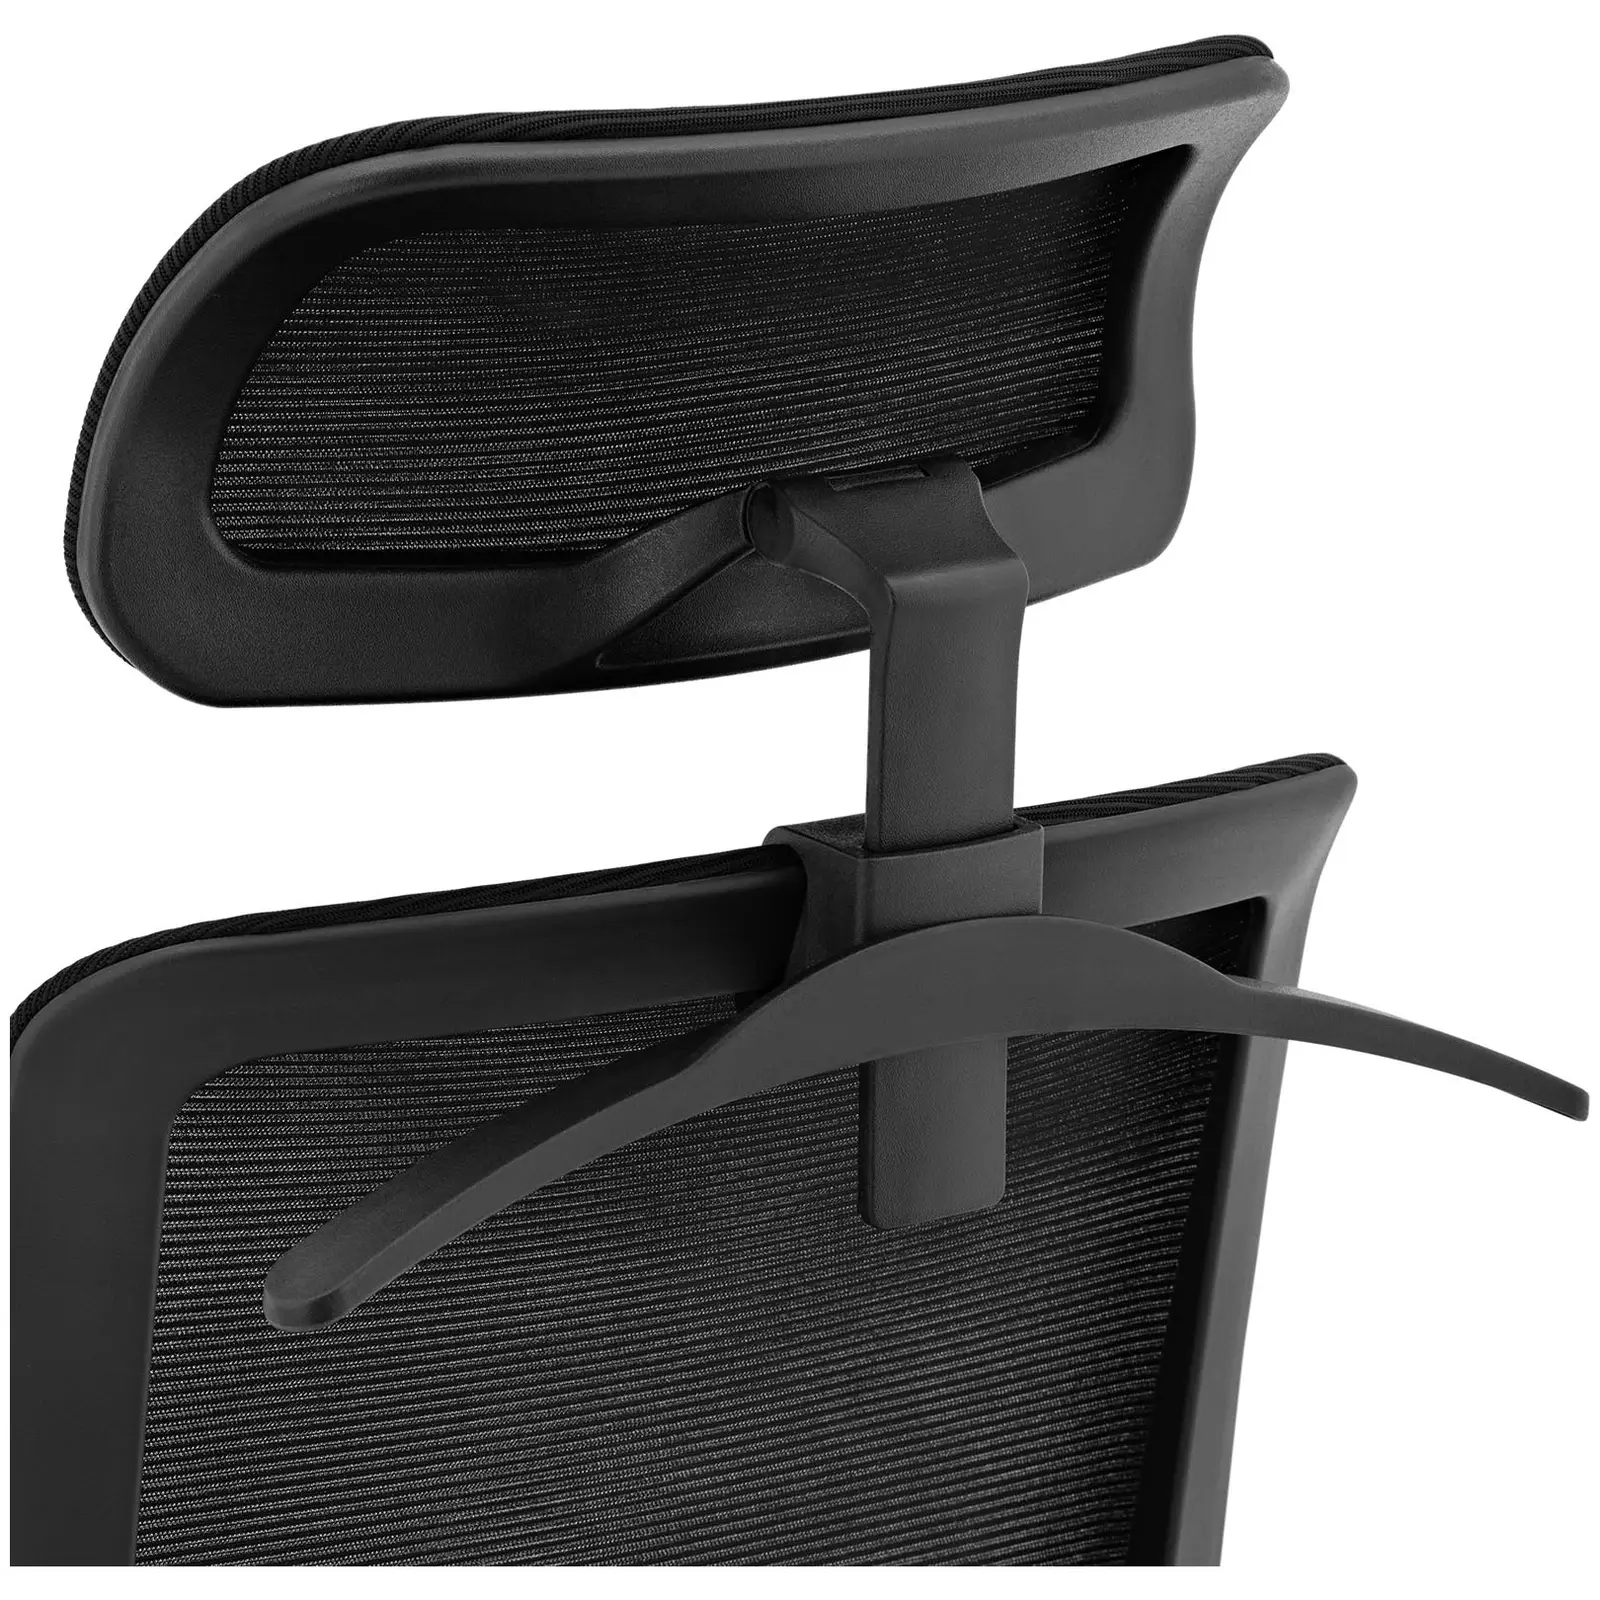 Kancelářská židle - síťované opěradlo - opěrka hlavy - sedák 50 x 61 cm - do 150 kg - černá